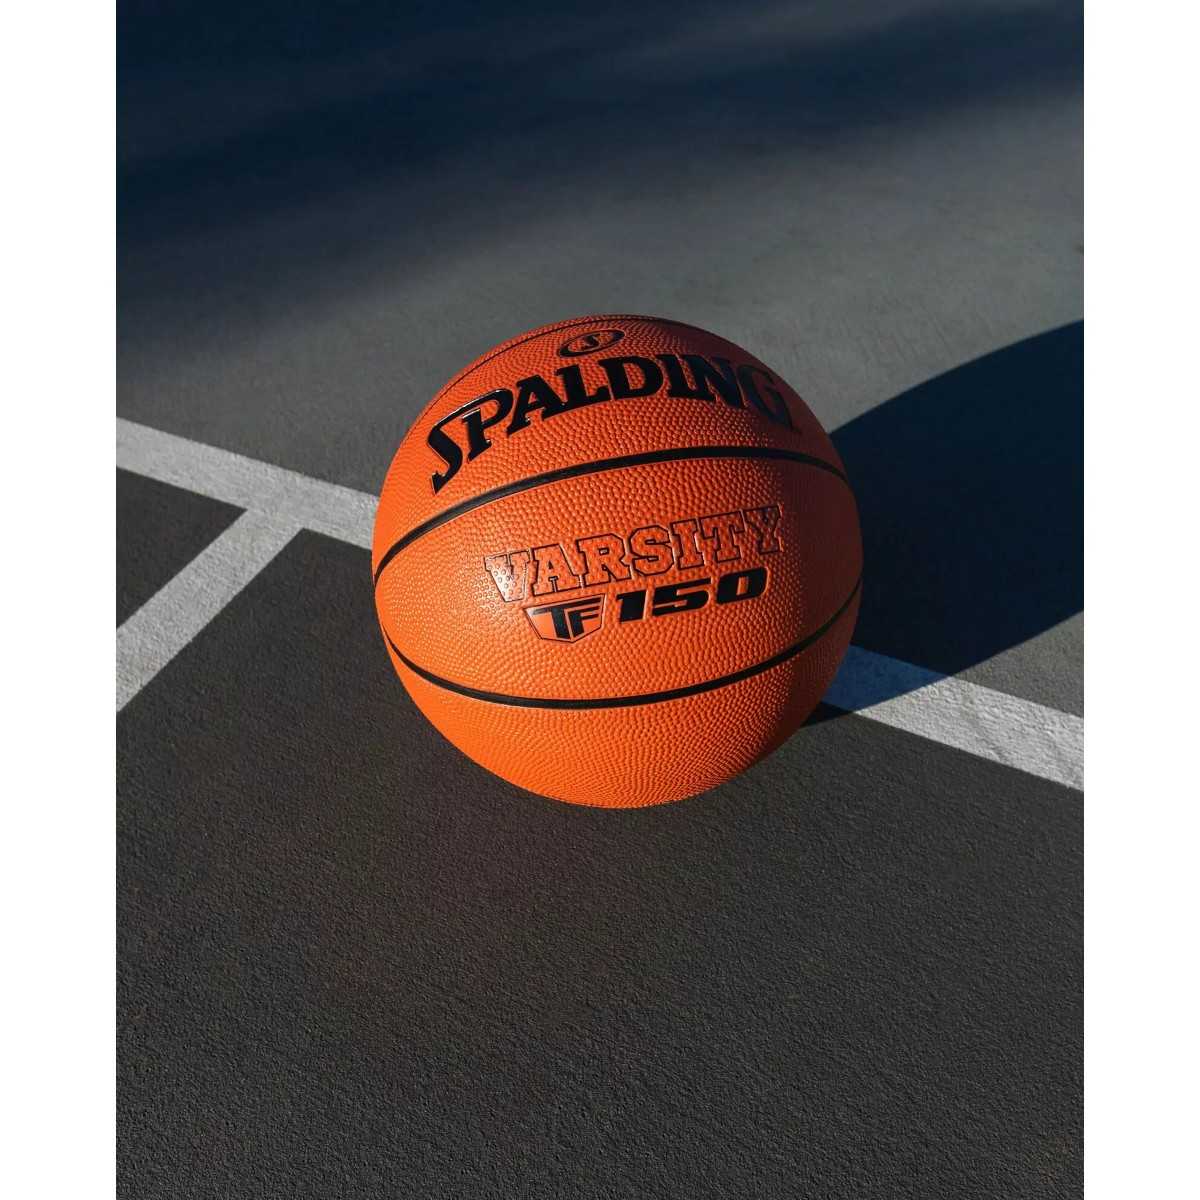 Spalding Warsity krepšinio kamuolys, 7